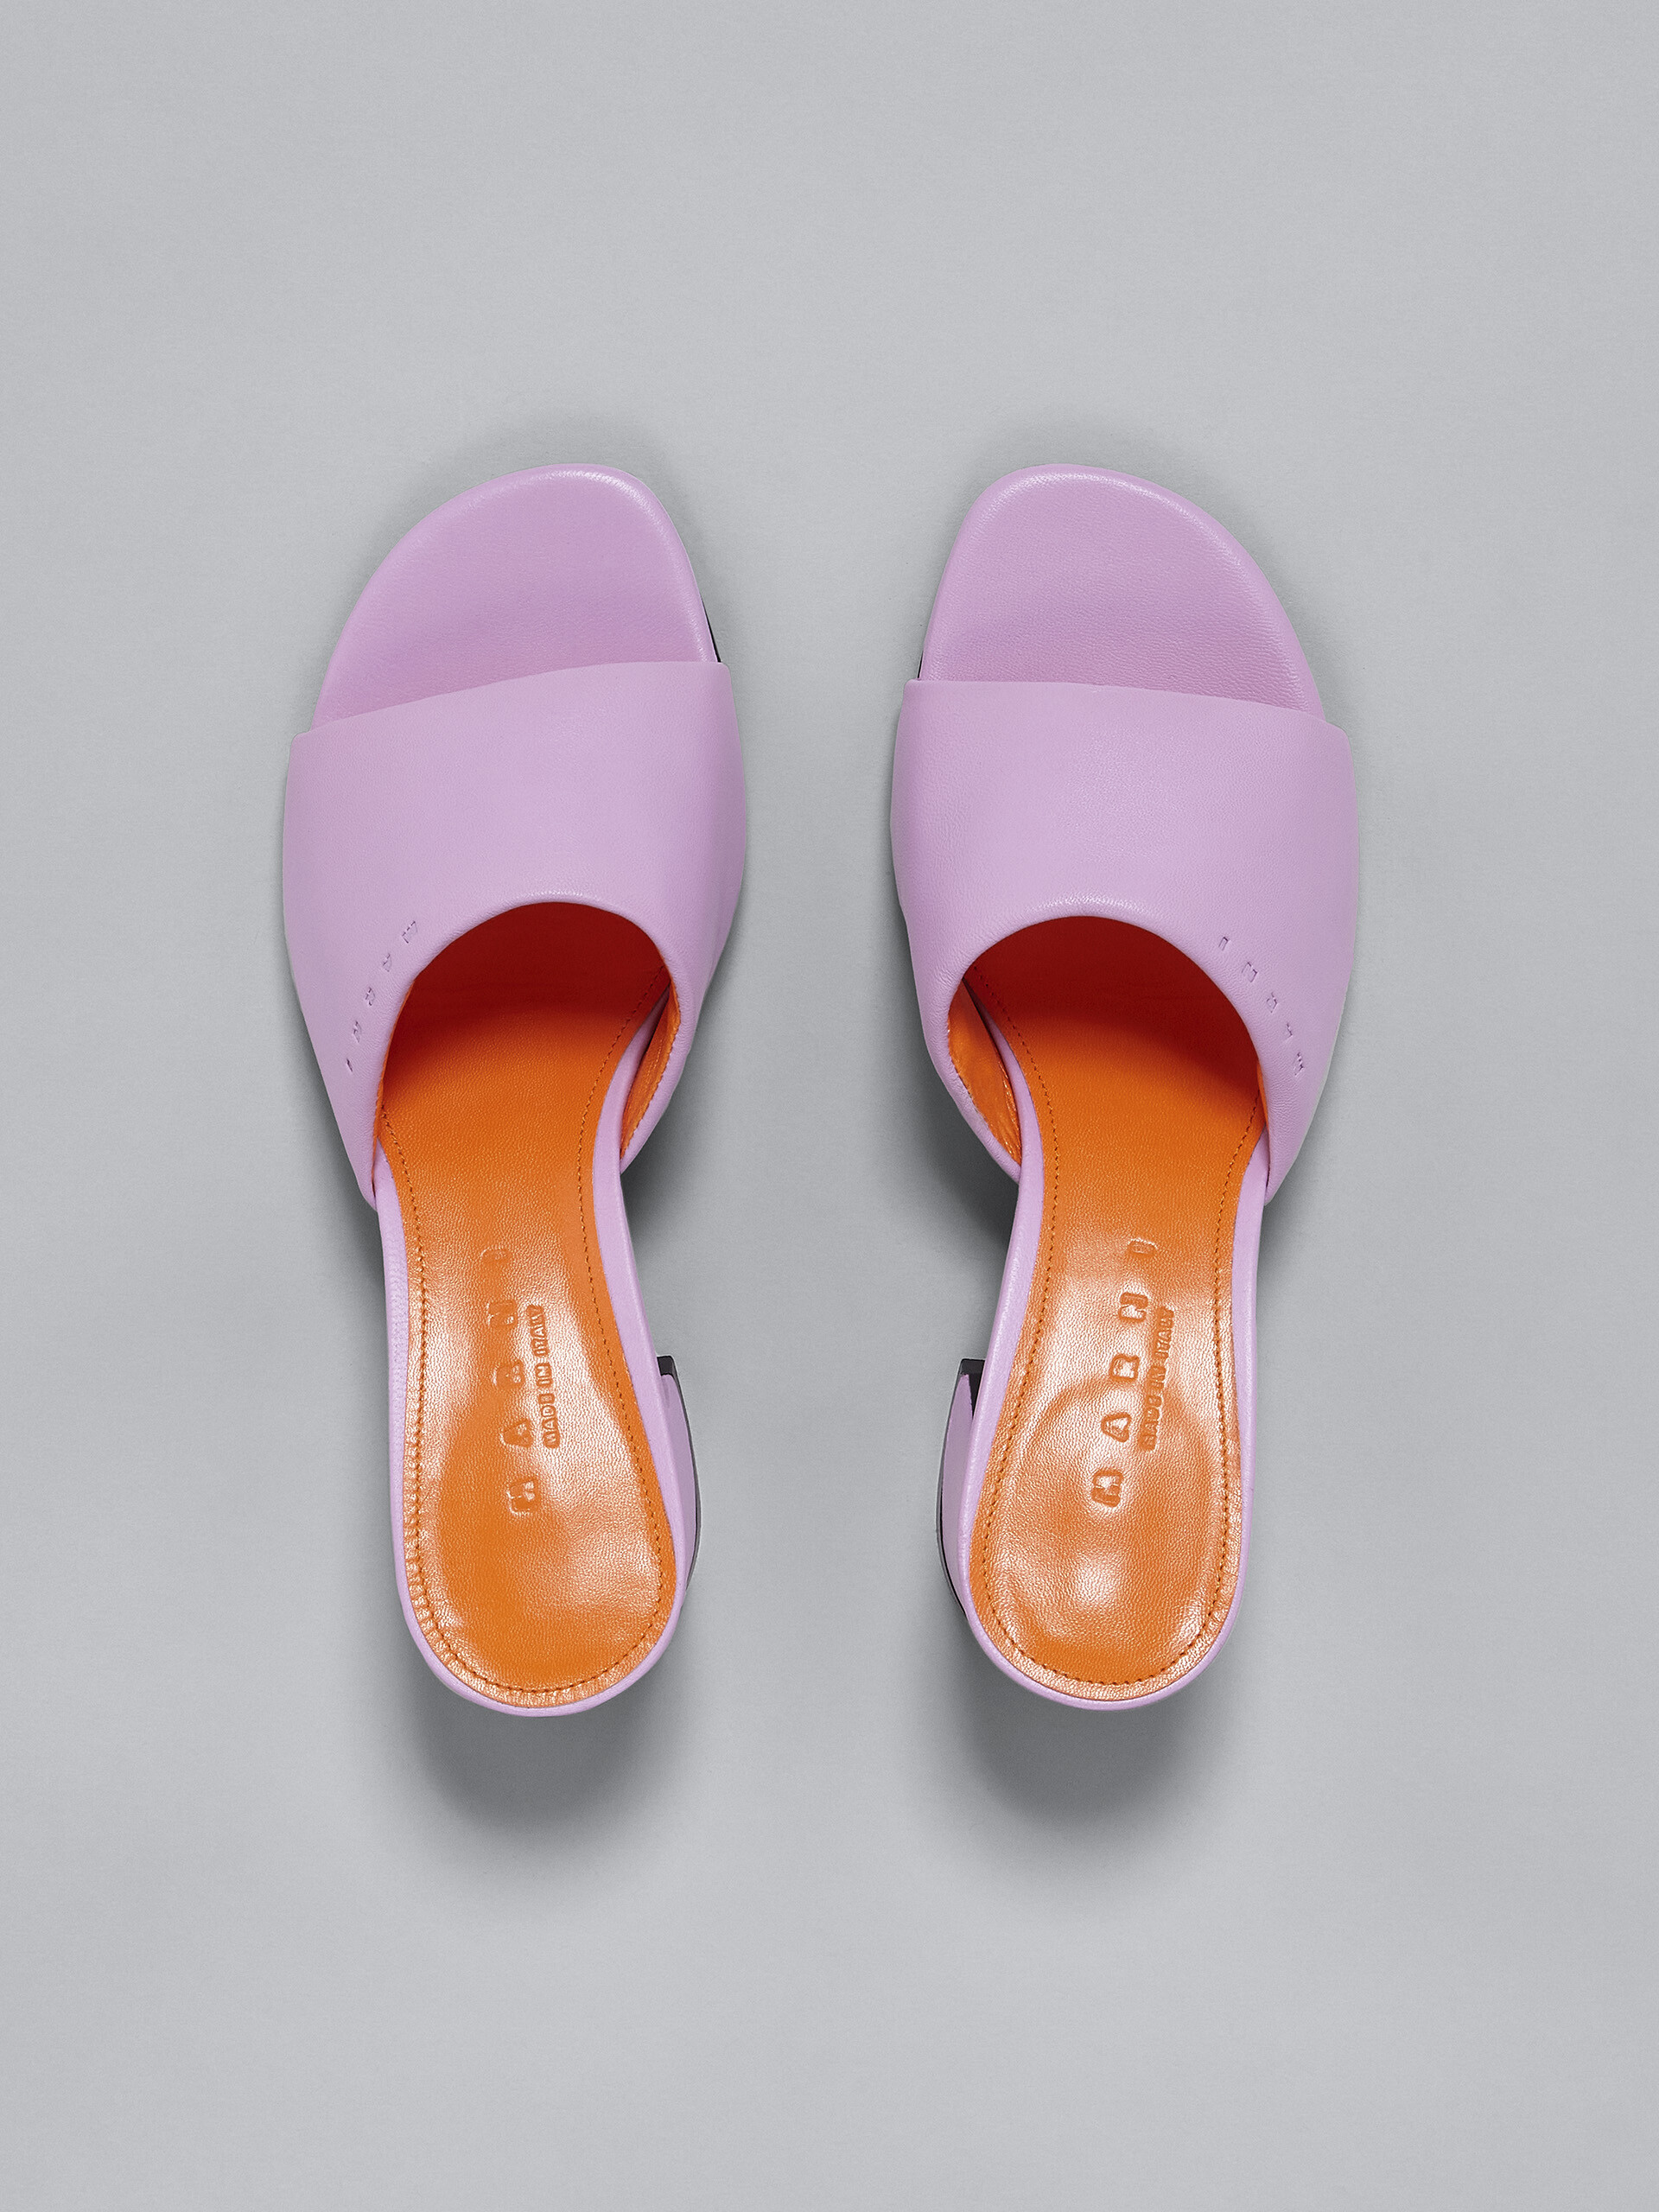 핑크 가죽 샌들 - Sandals - Image 4